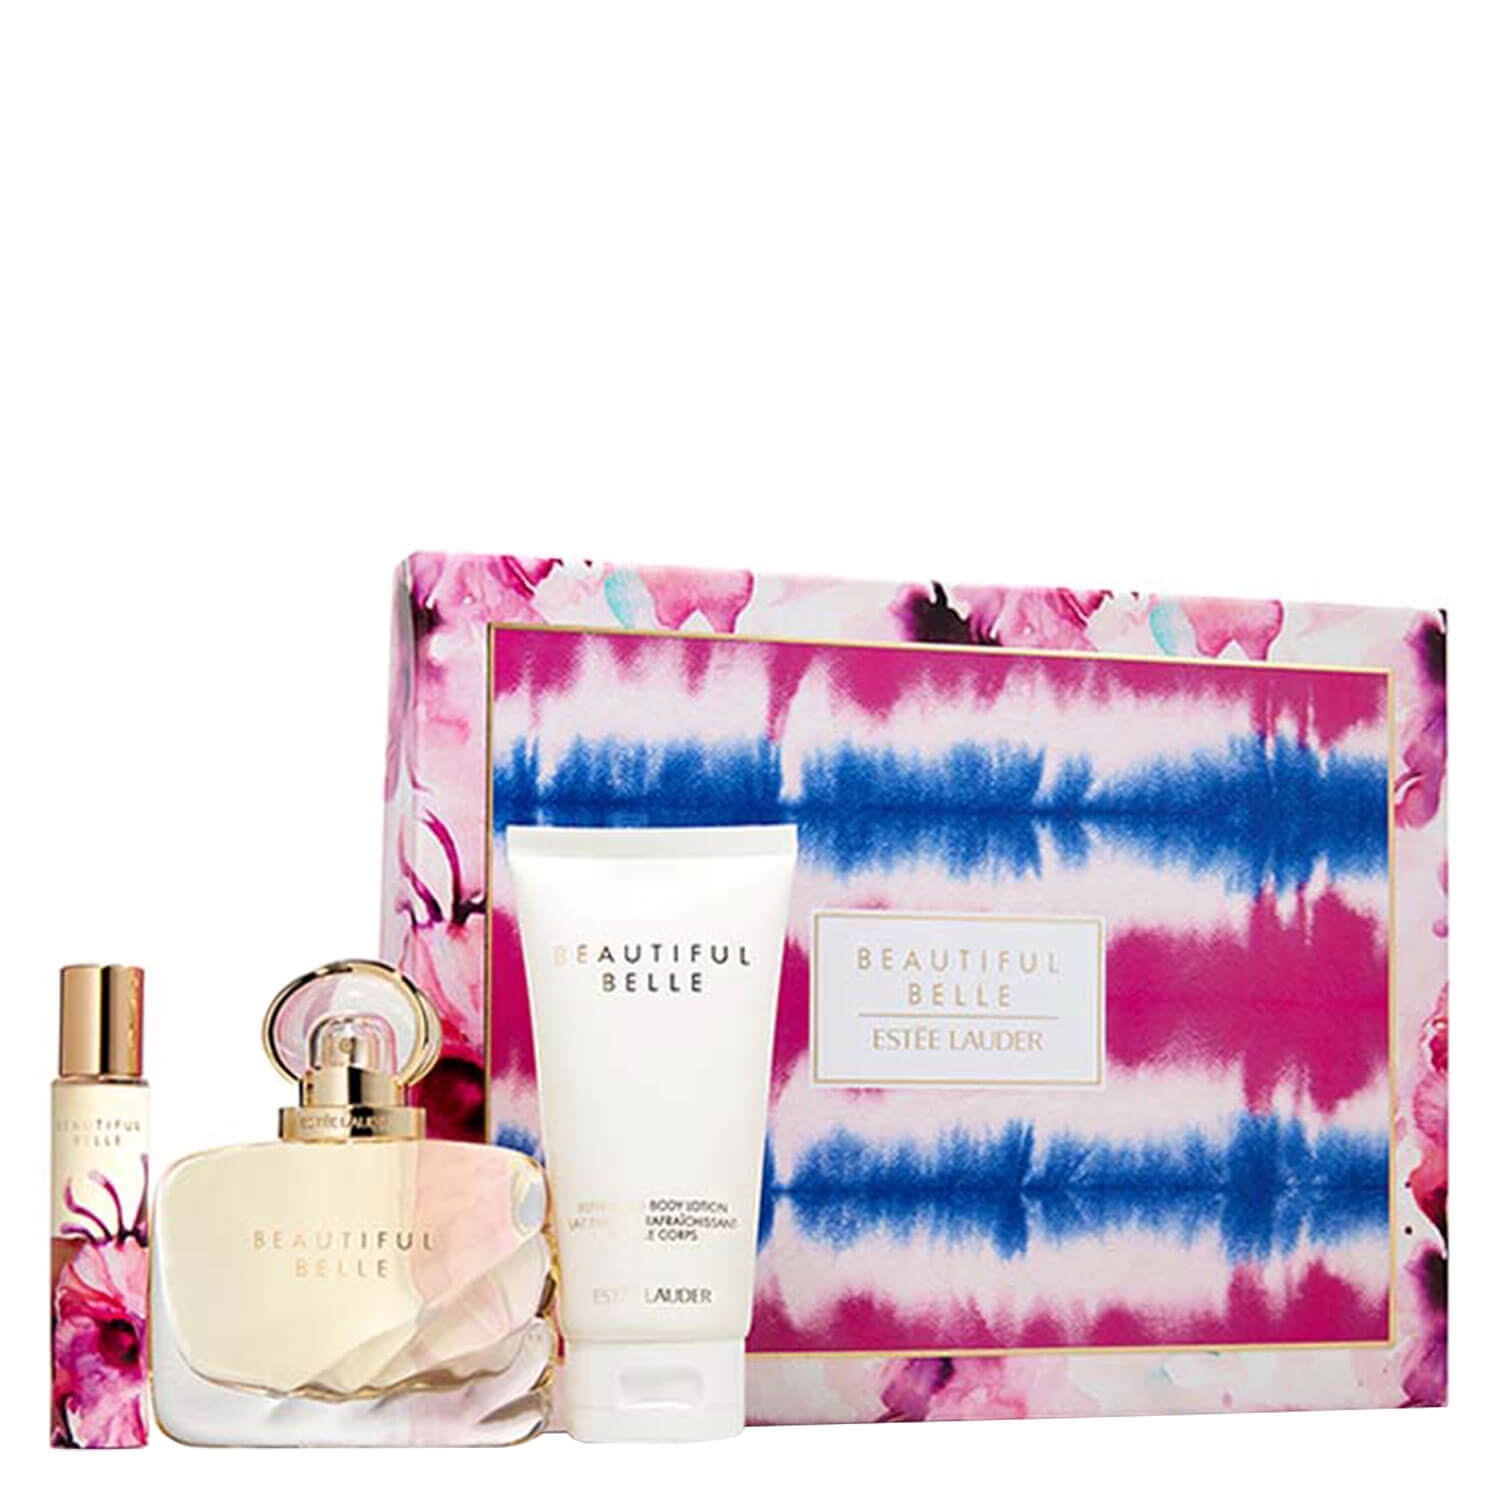 Produktbild von Beautiful Belle - Eau de Parfum Set